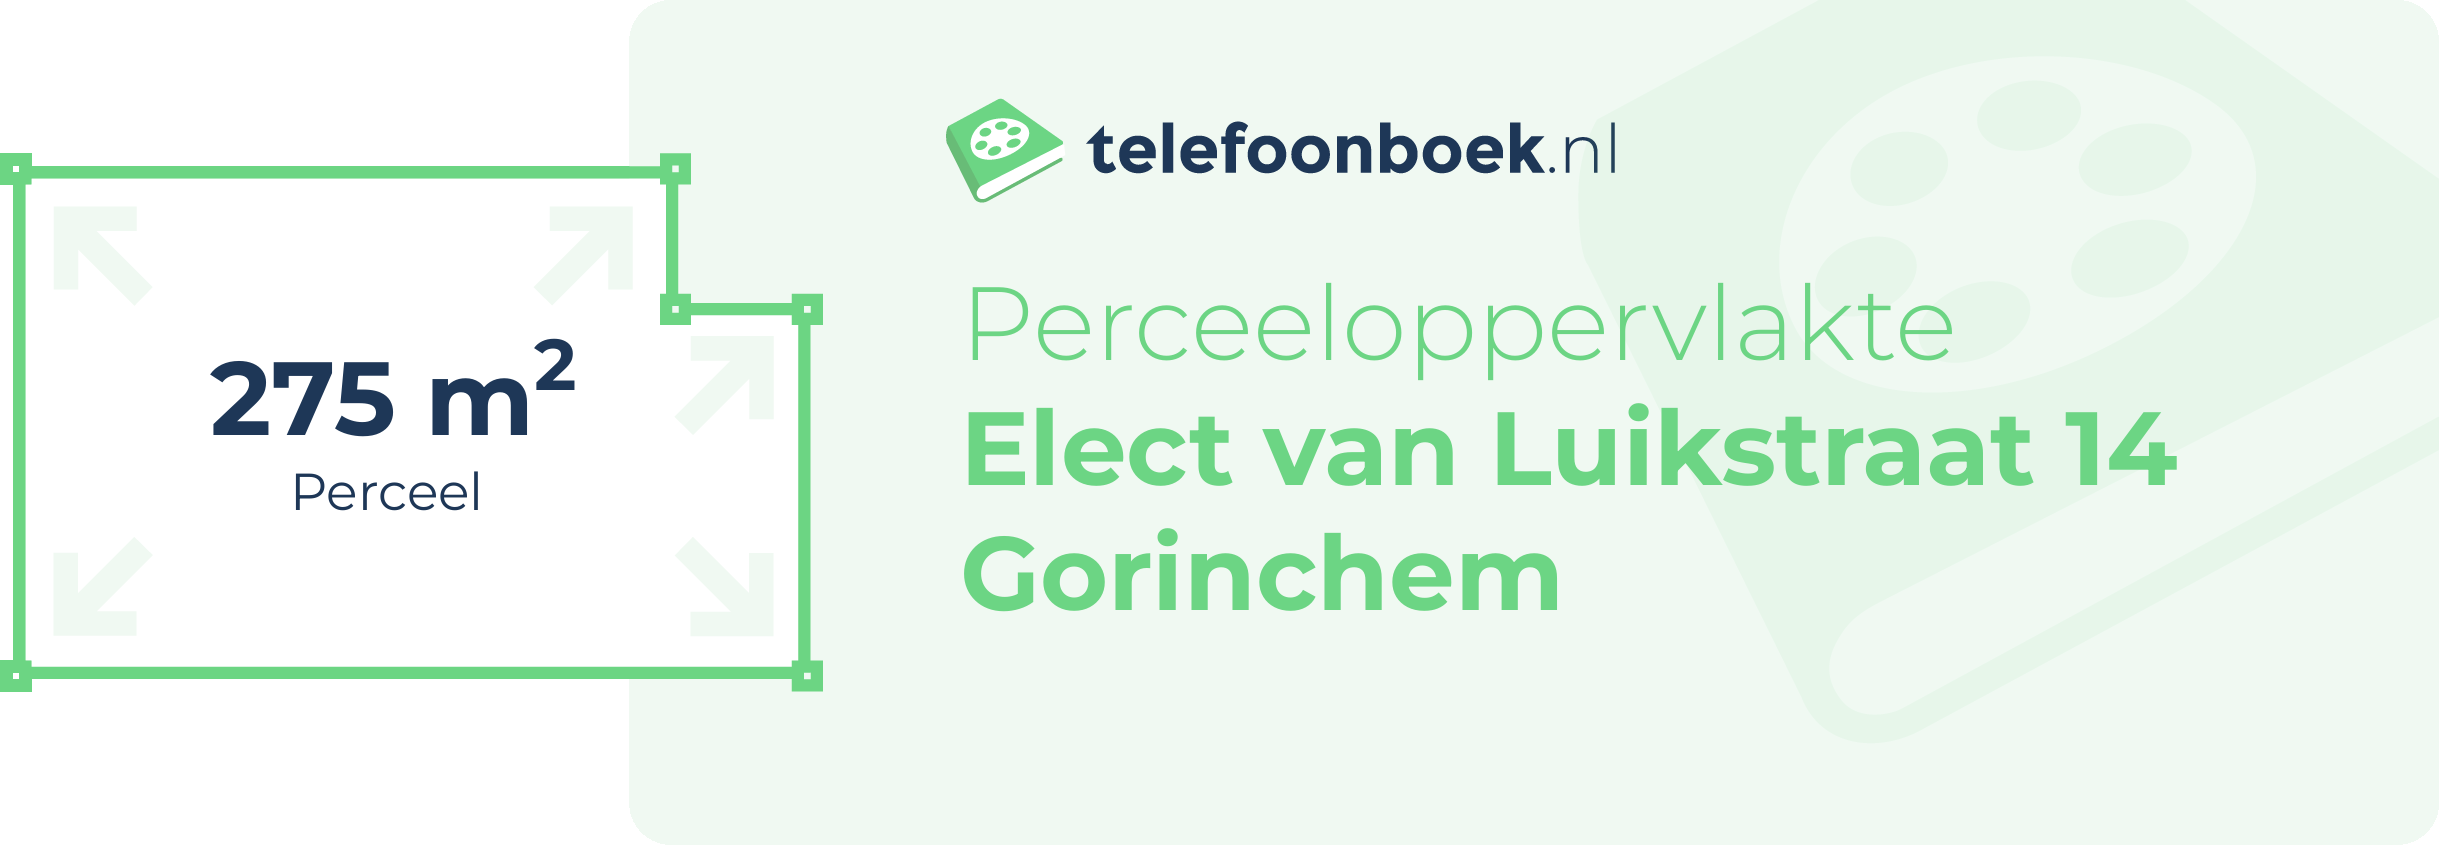 Perceeloppervlakte Elect Van Luikstraat 14 Gorinchem